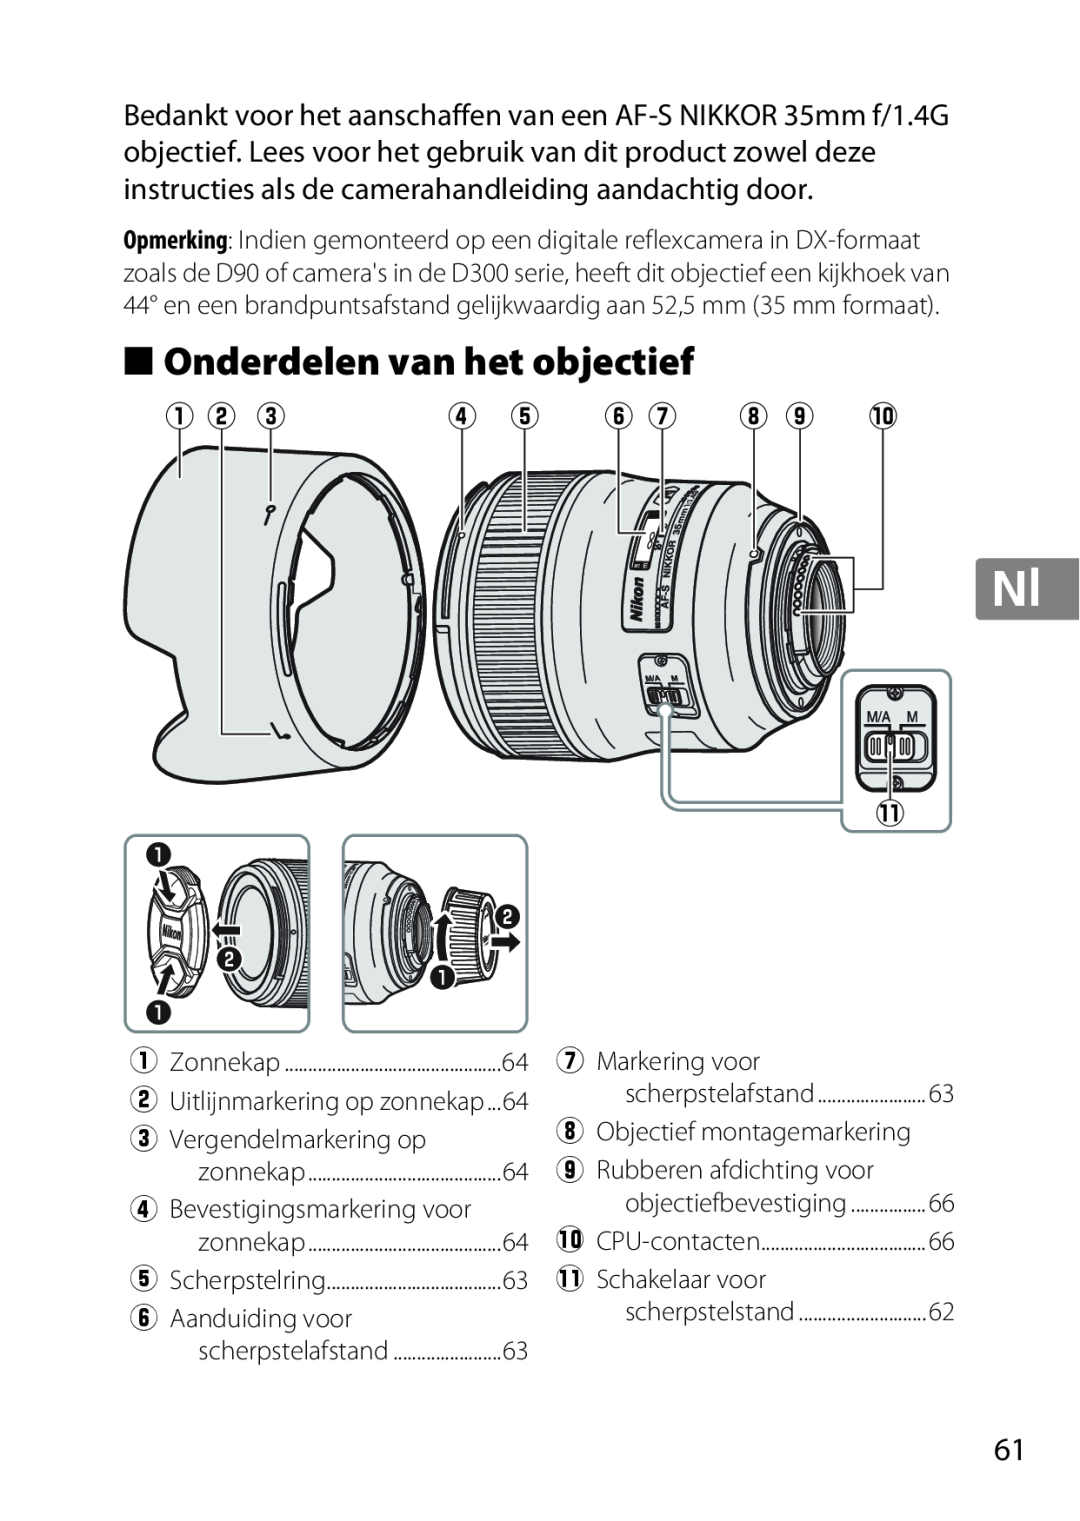 Nikon 35mmf14G, AF-S Onderdelen van het objectief, q w e, y u i o !0, e Vergendelmarkering op, rBevestigingsmarkering voor 